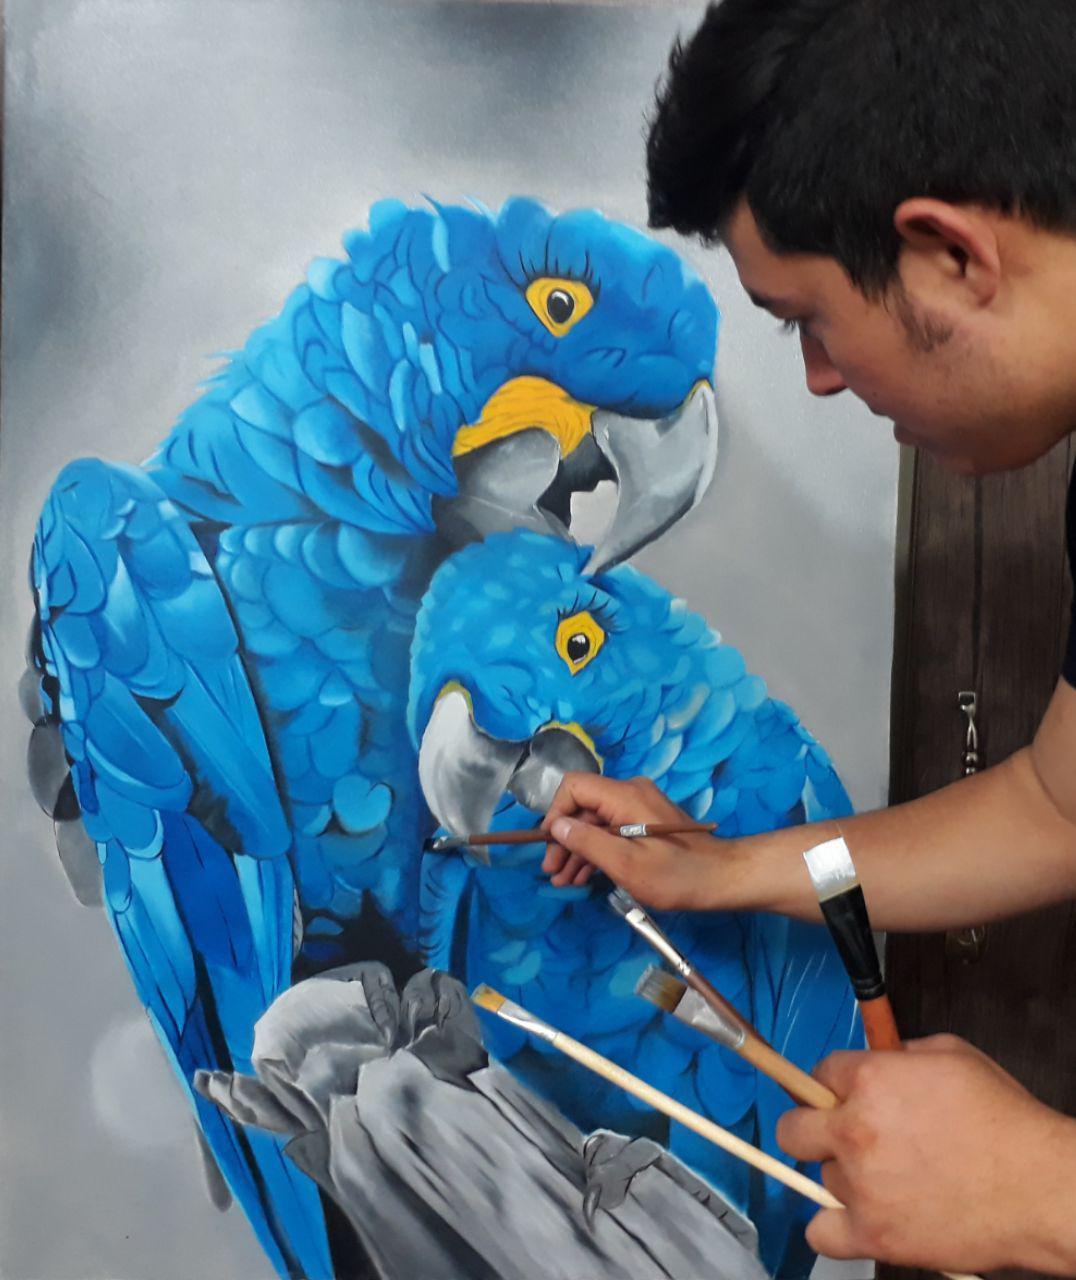 تابلو نقاشی رنگ روغن طوطی آبی با سبک رئال